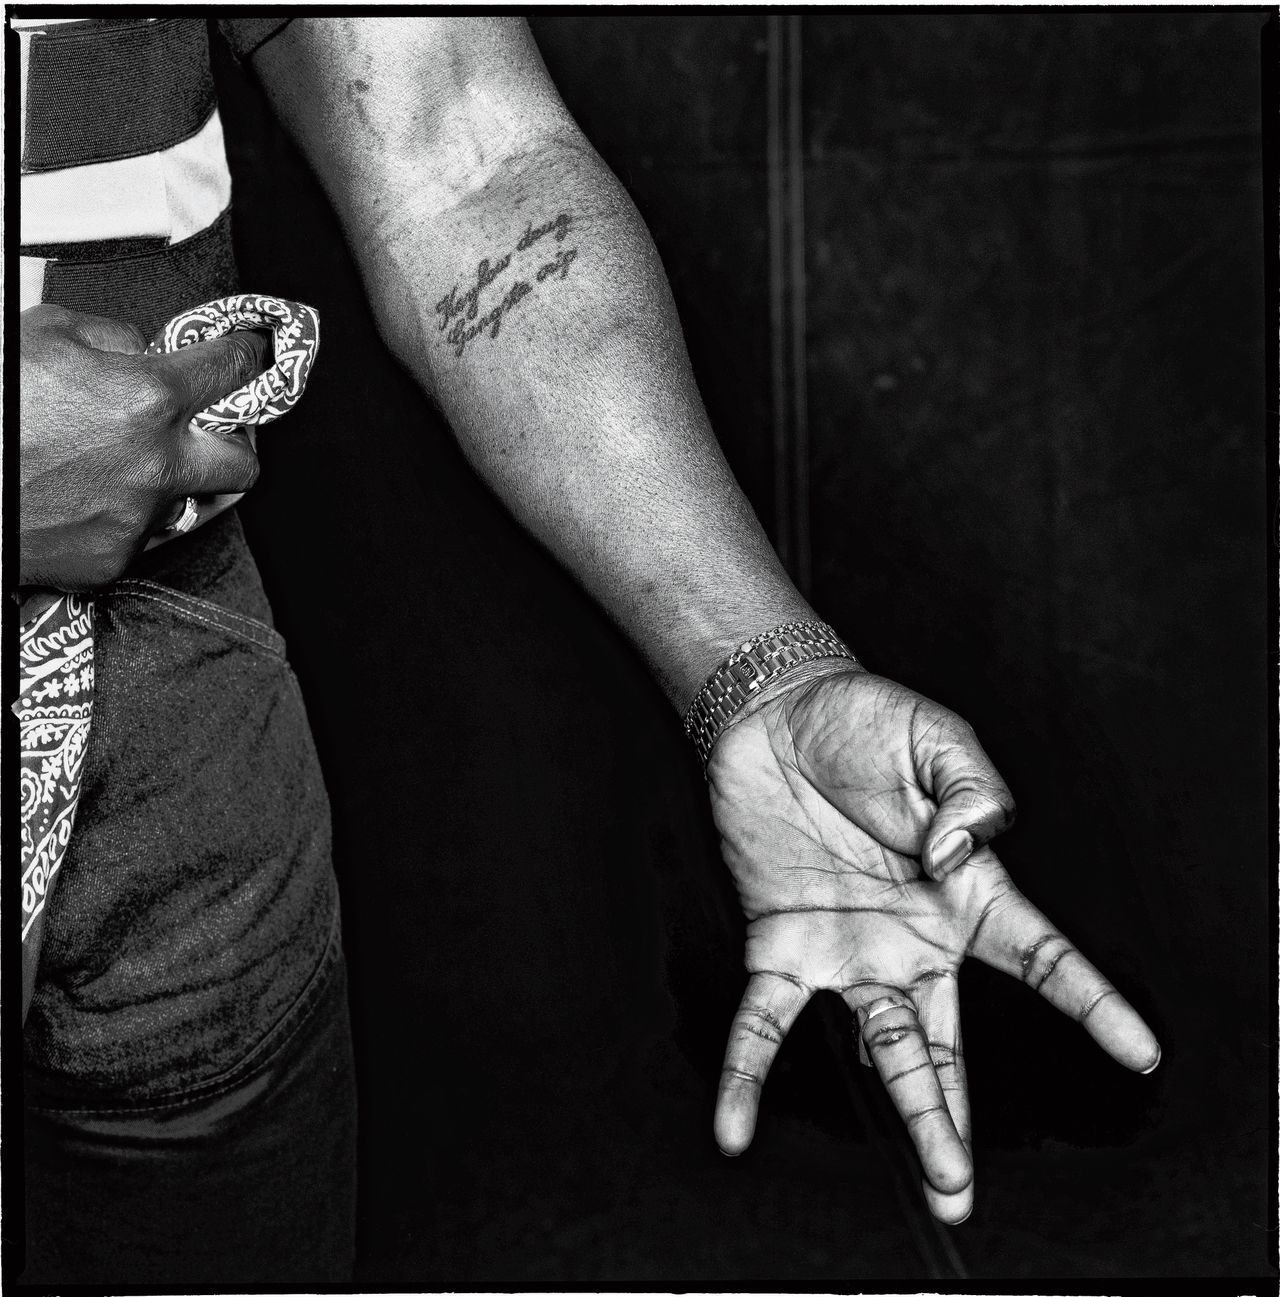 De handen van Delano R., alias Keylow, vastgelegd in een speciale serie van fotograaf Gerard Wessel